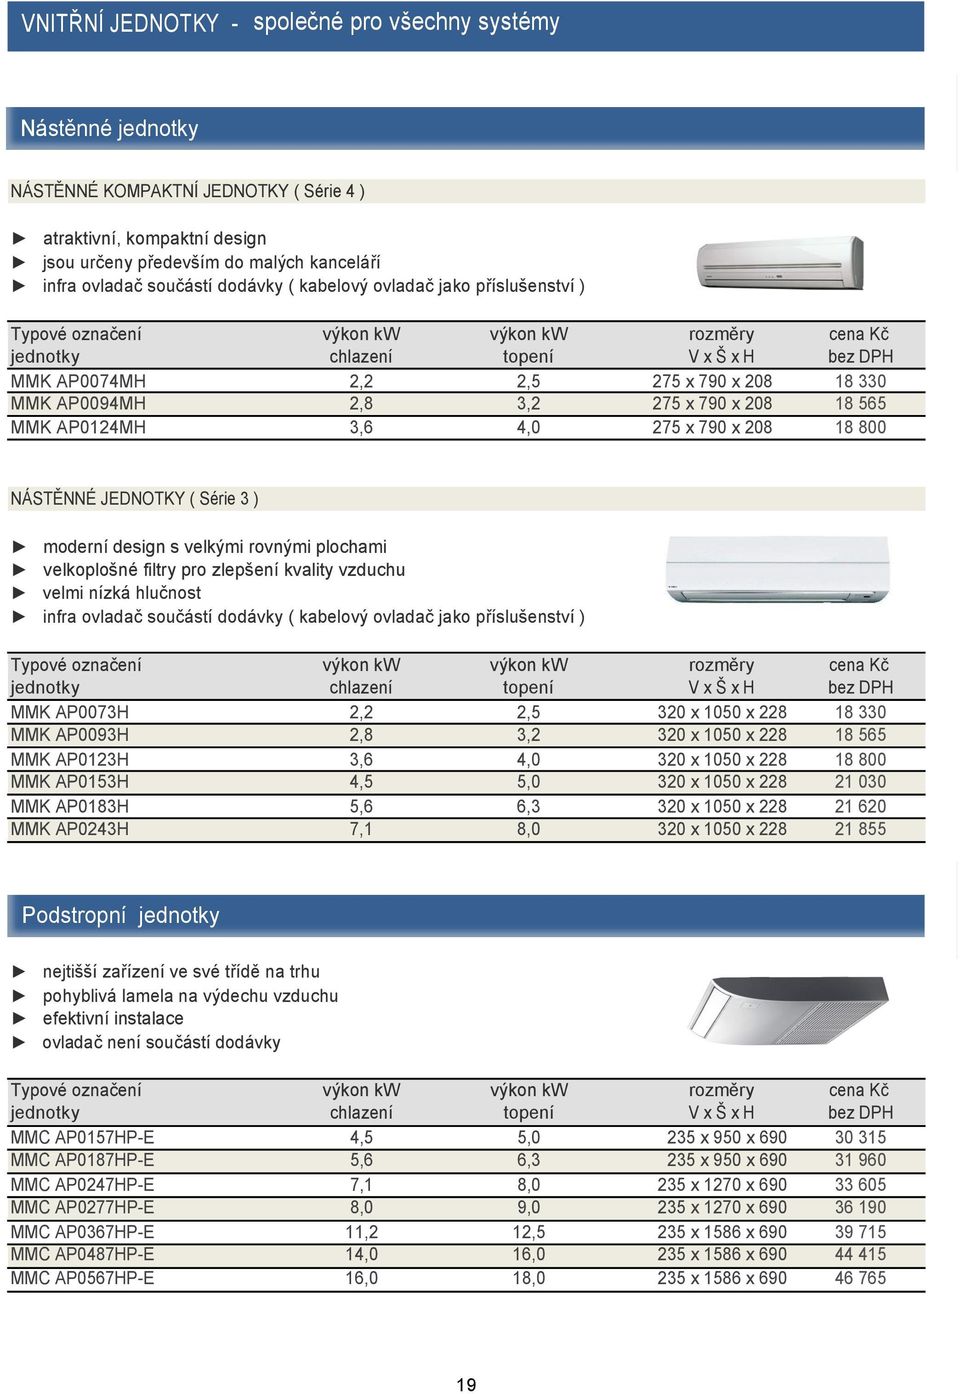 moderní design s velkými rovnými plochami velkoplošné filtry pro zlepšení kvality vzduchu velmi nízká hlučnost infra ovladač součástí dodávky ( kabelový ovladač jako příslušenství ) MMK AP0073H MMK